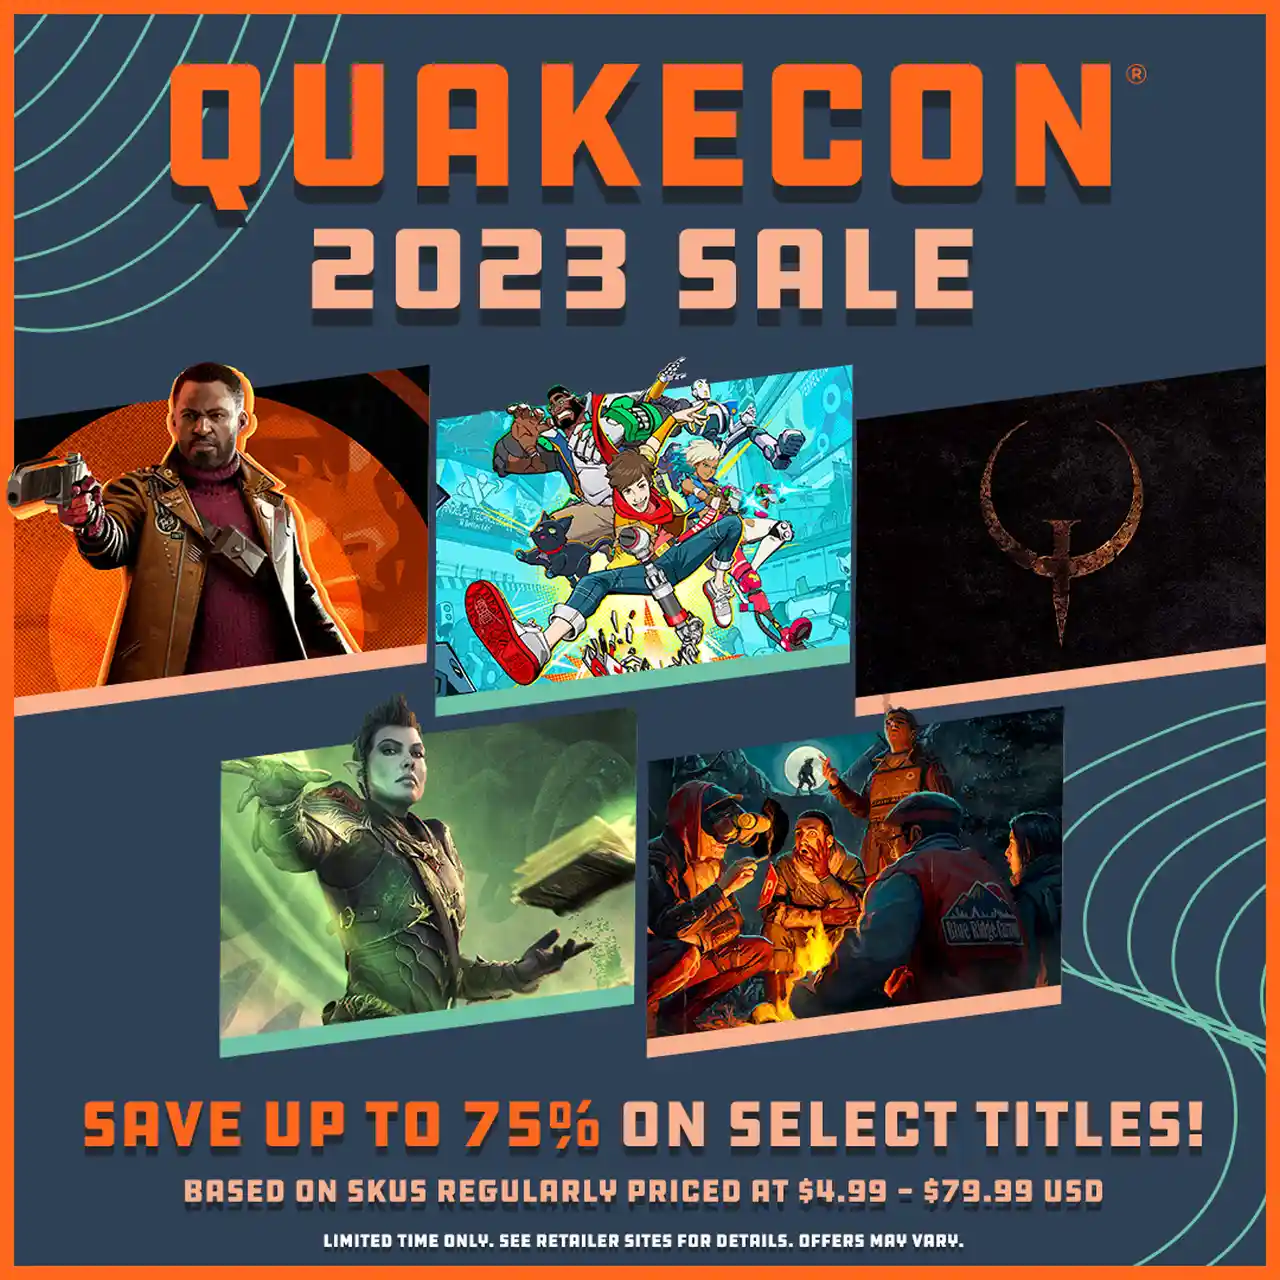 QuakeCon 2023 - rivelato il calendario degli eventi: si inizia giovedì 10 agosto